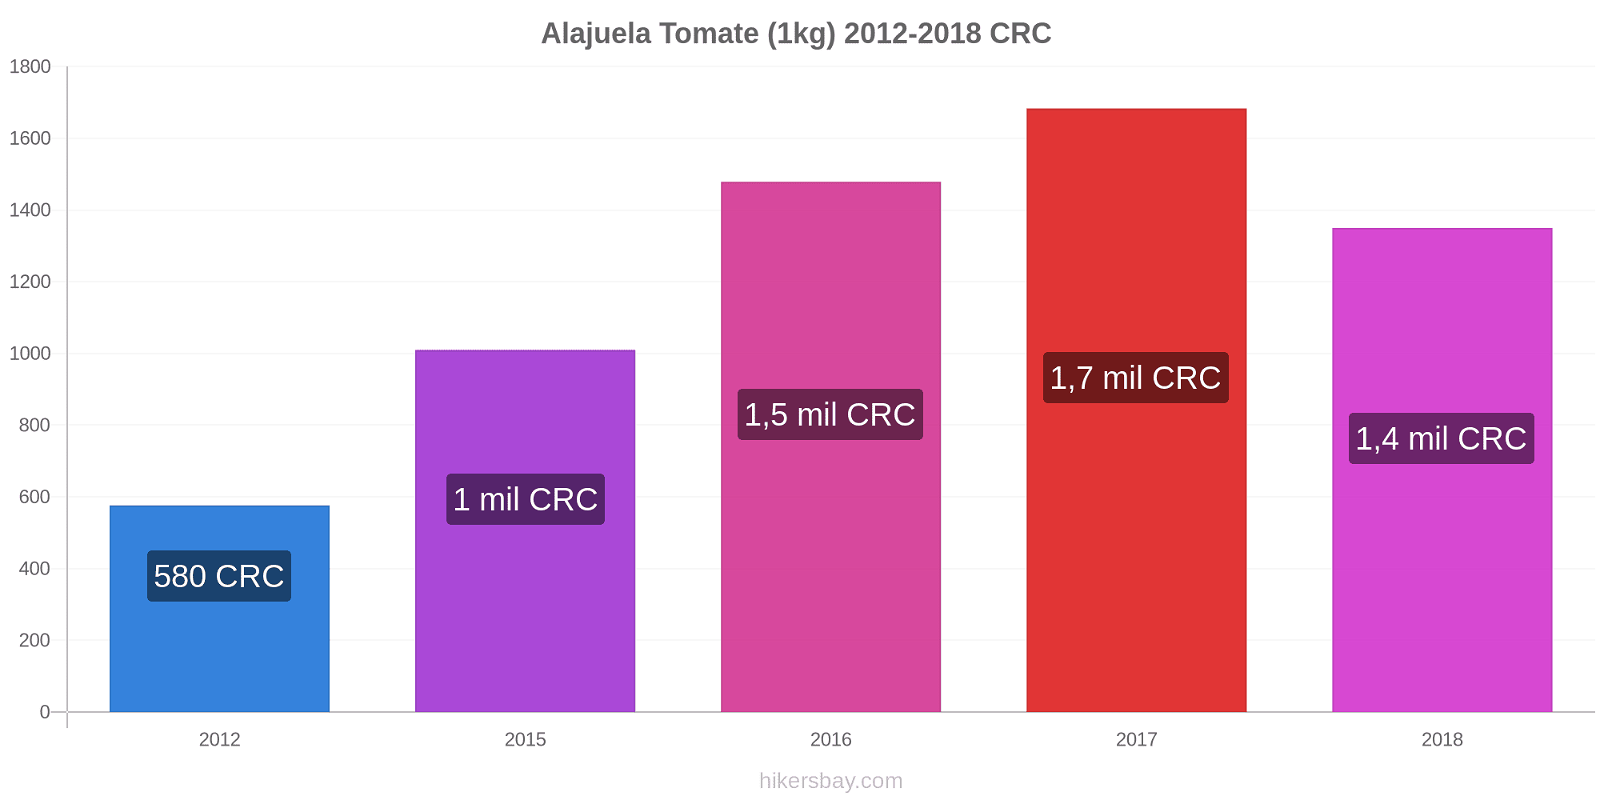 Alajuela cambios de precios Tomate (1kg) hikersbay.com